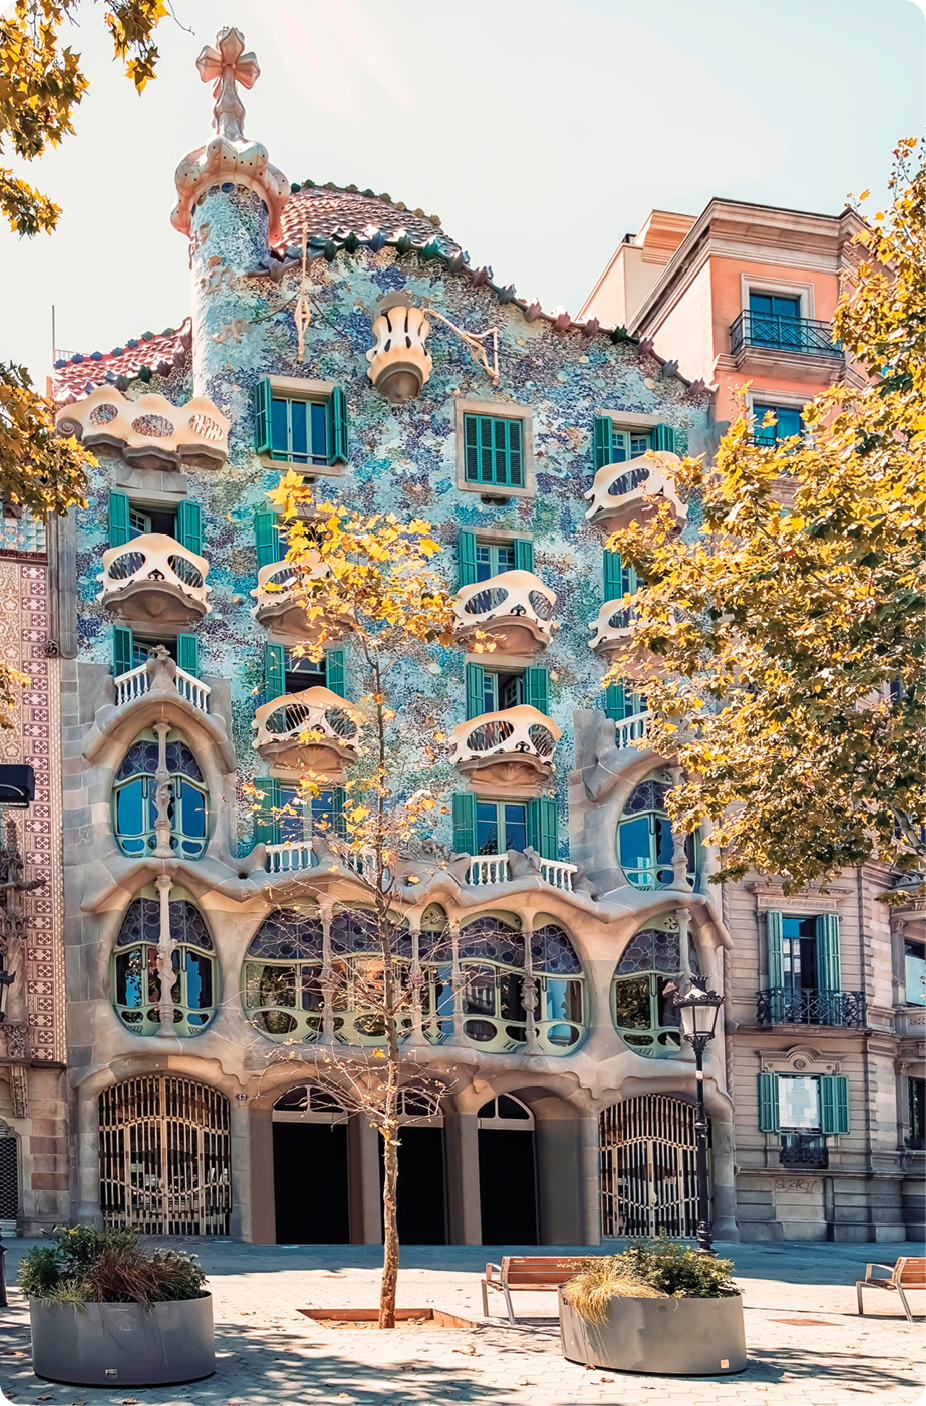 Fotografia. Fachada de edifício com cinco andares e muitas janelas, algumas com formato retangular e outras em formato circular. A fachada é azul com tons de verde e cor-de-rosa.